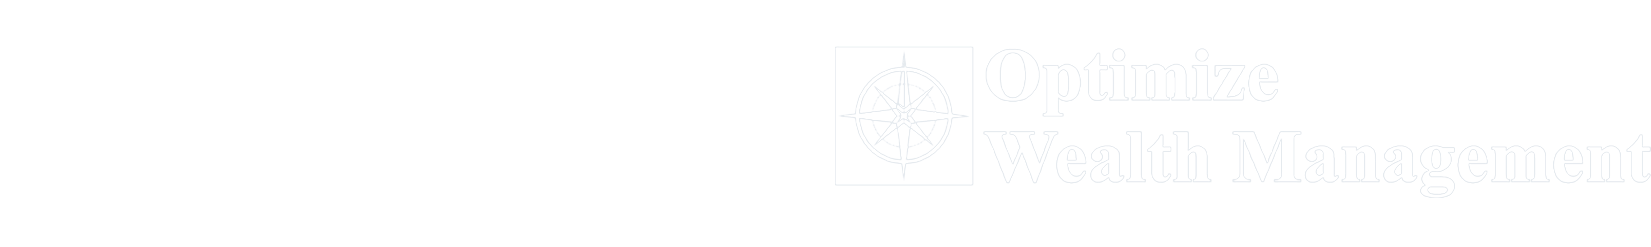 Logo; white text spells 'Holmlund Financial Optimize Wealth Management''